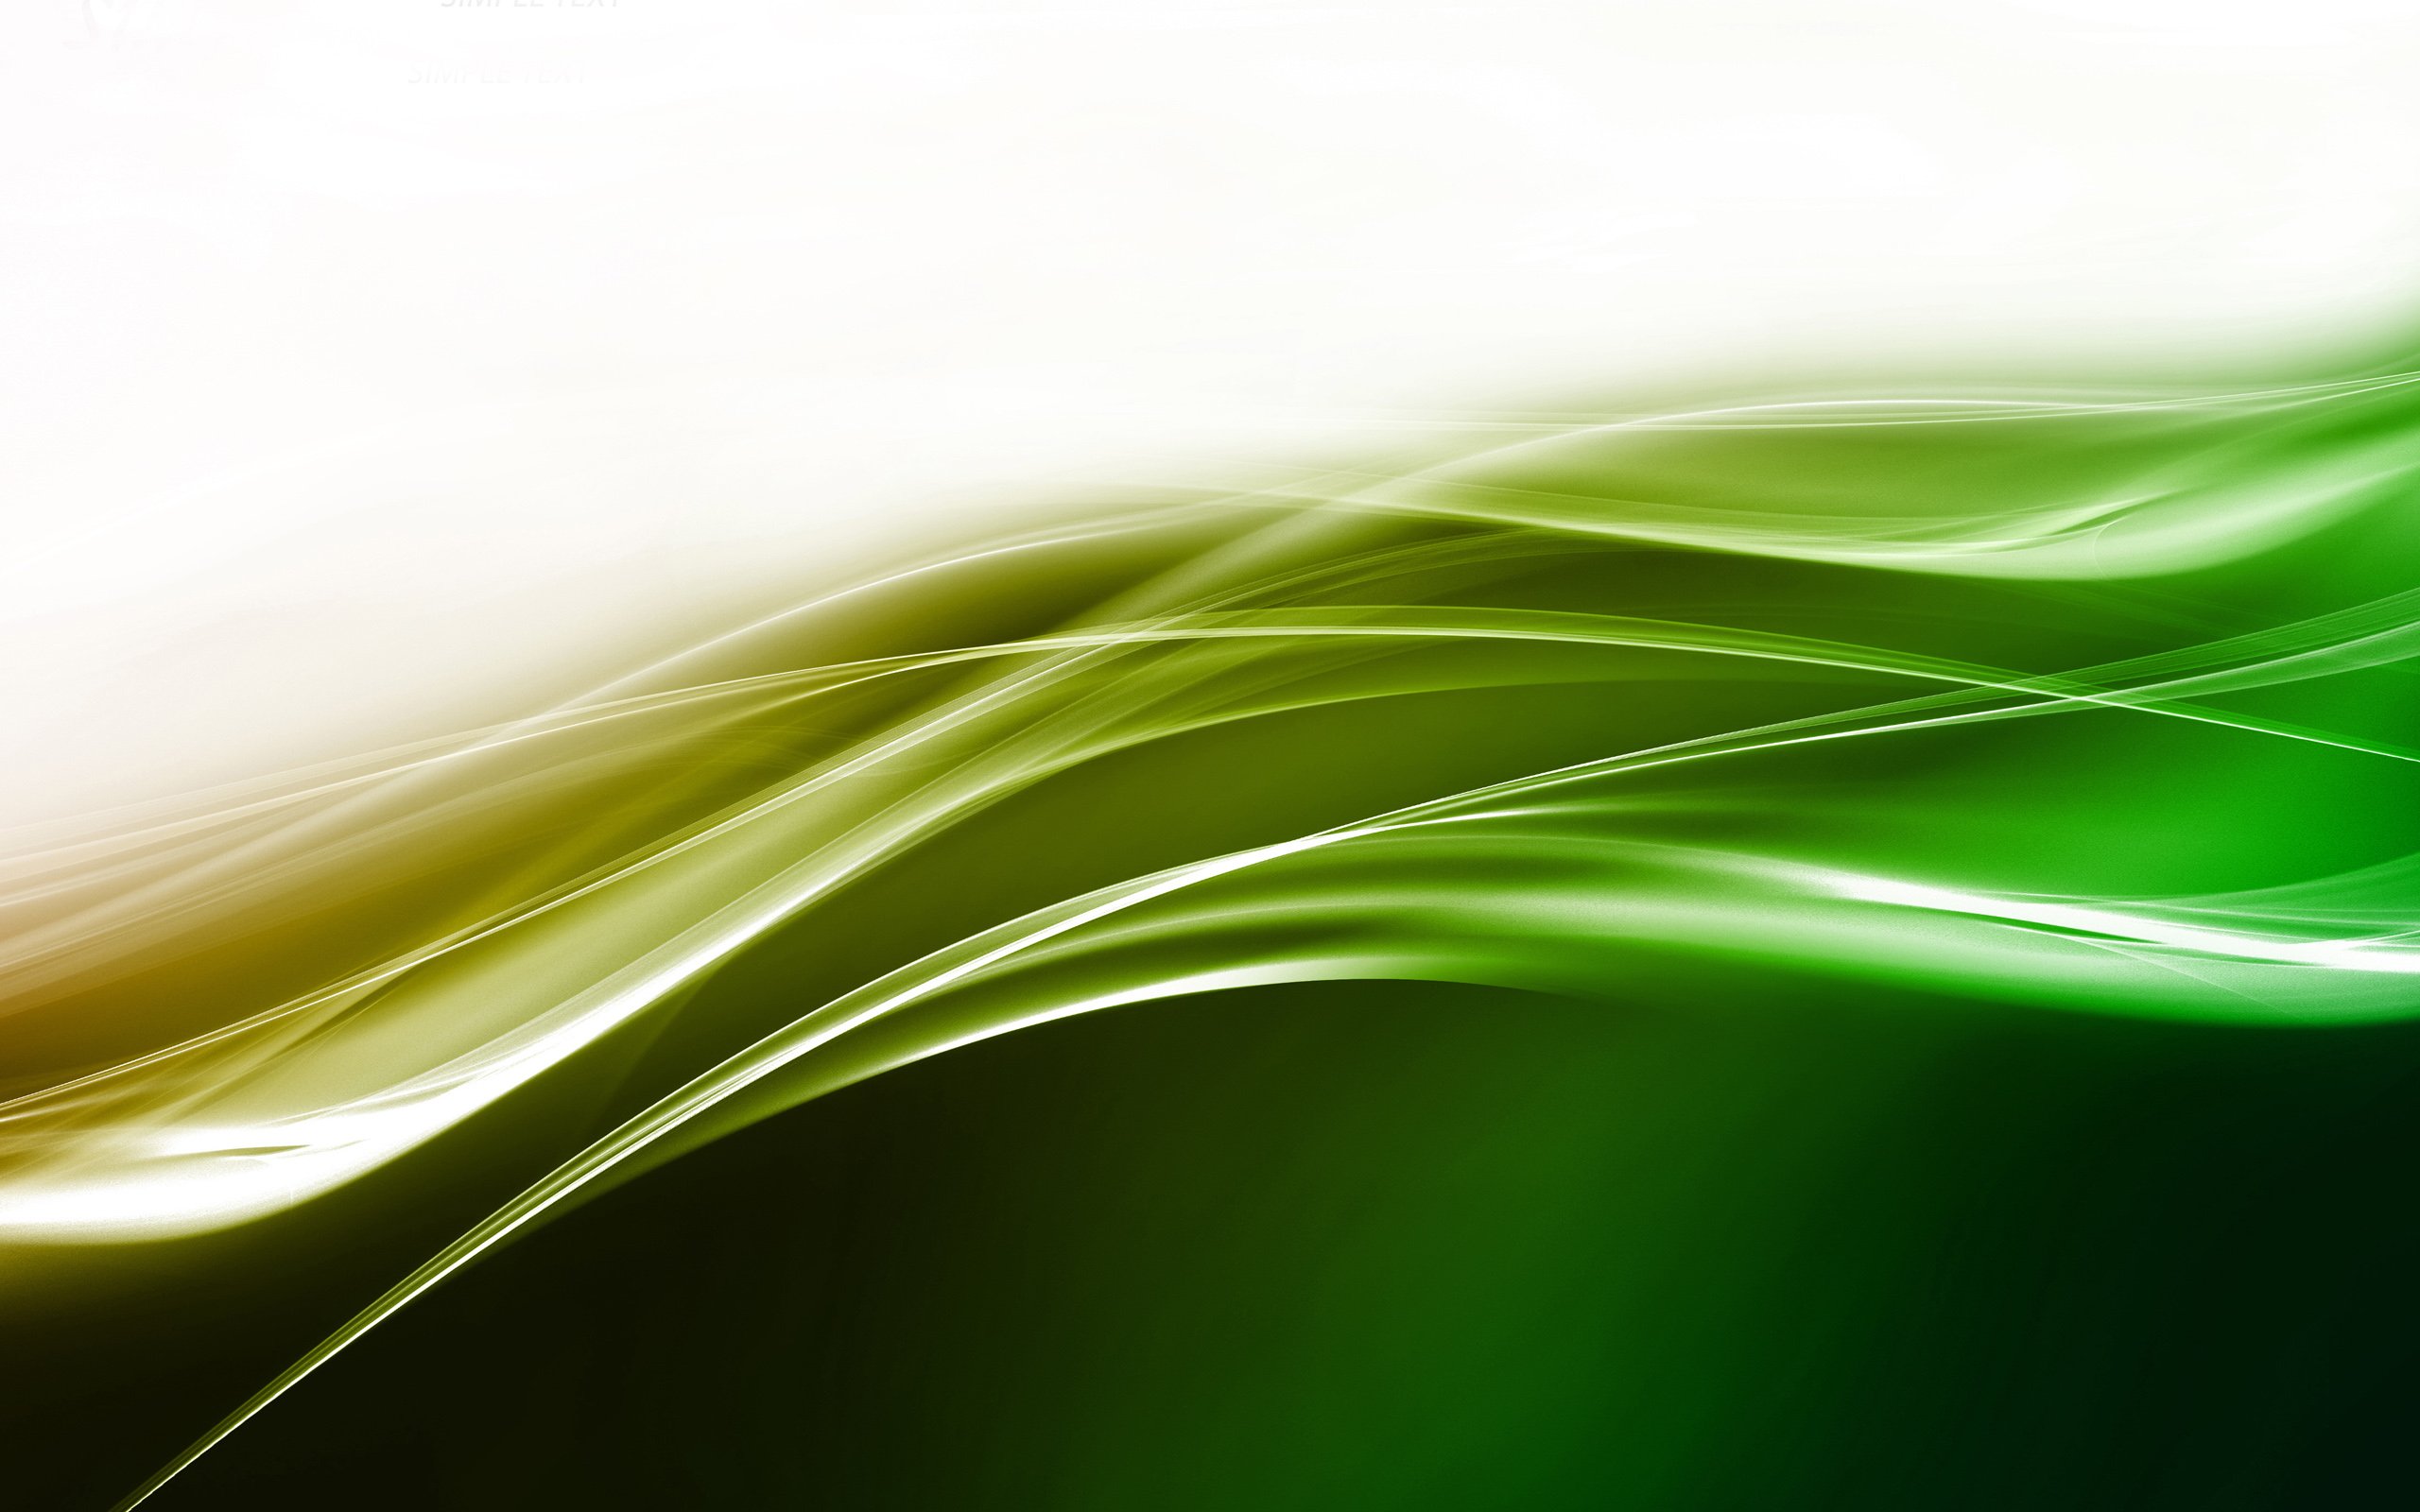 緑の壁紙デザイン,緑,光,黄,水,ライン